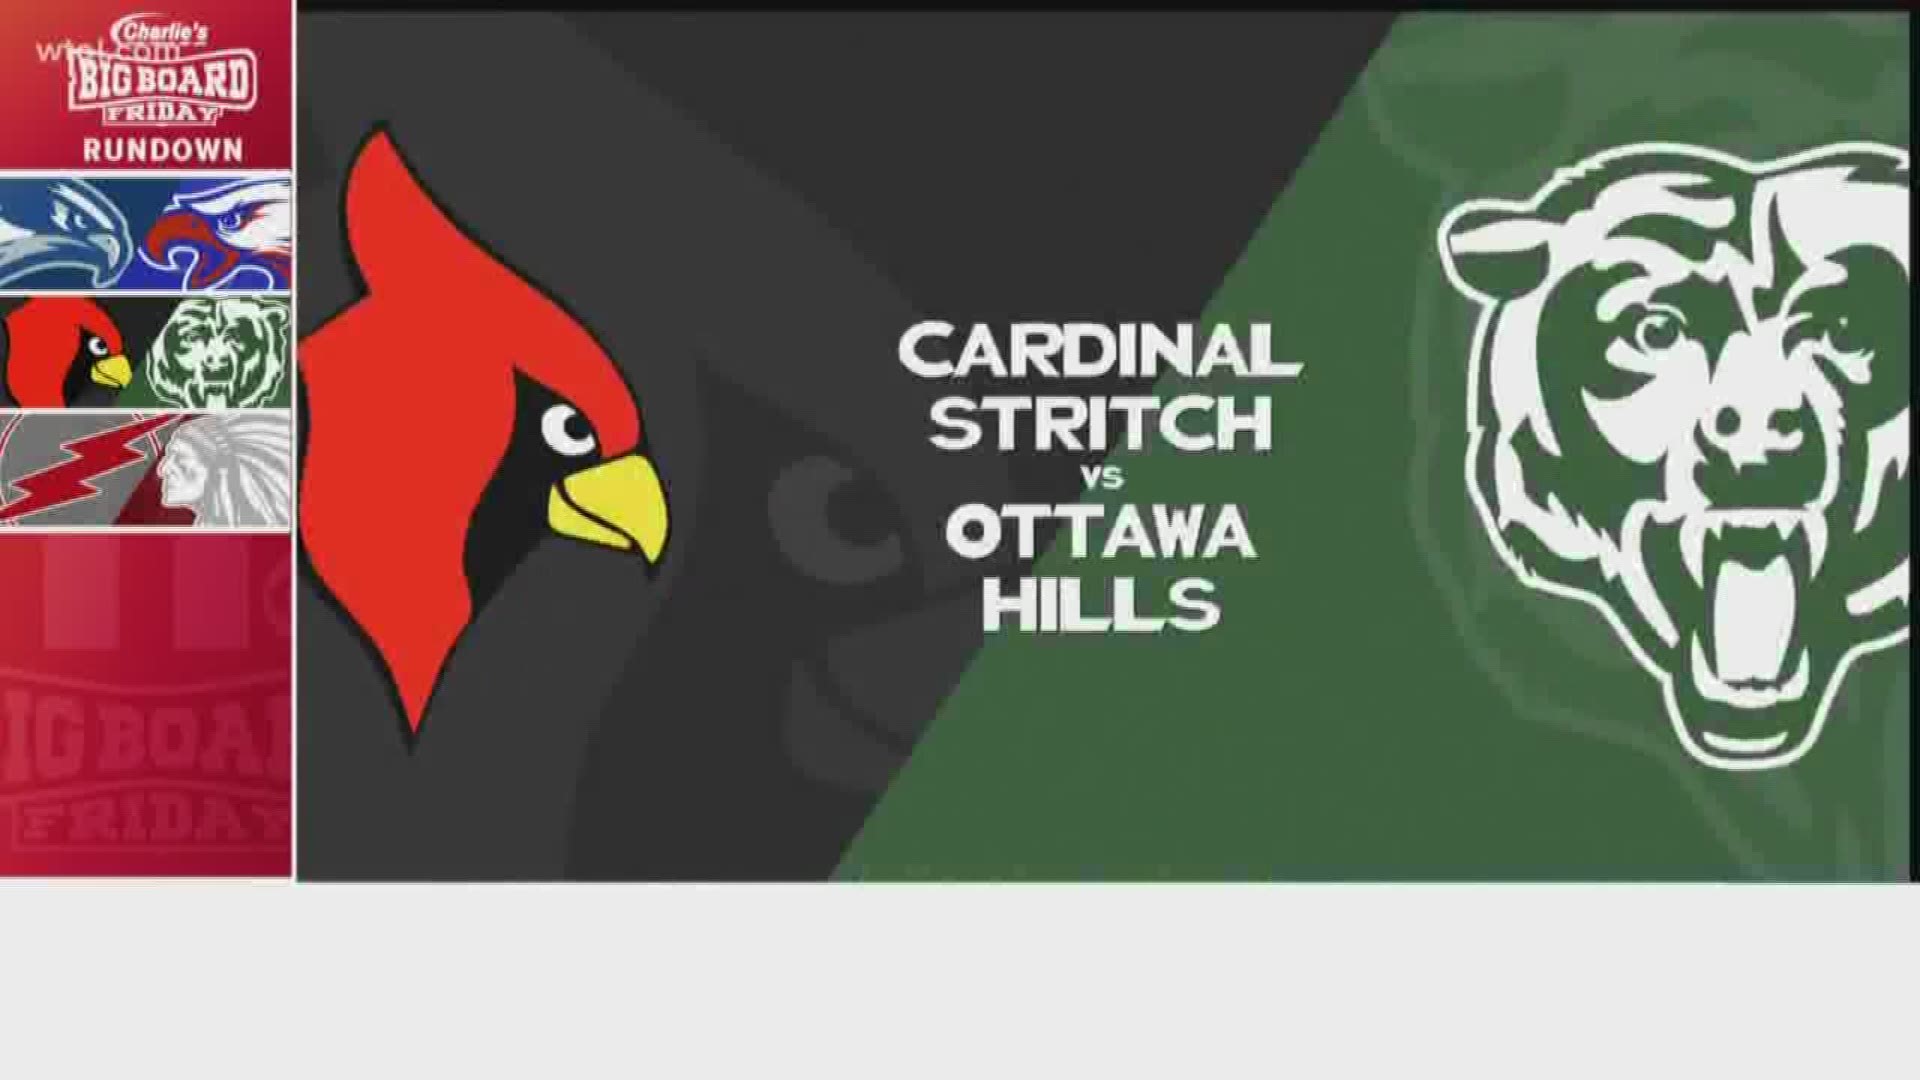 Ottawa Hills win 42-14